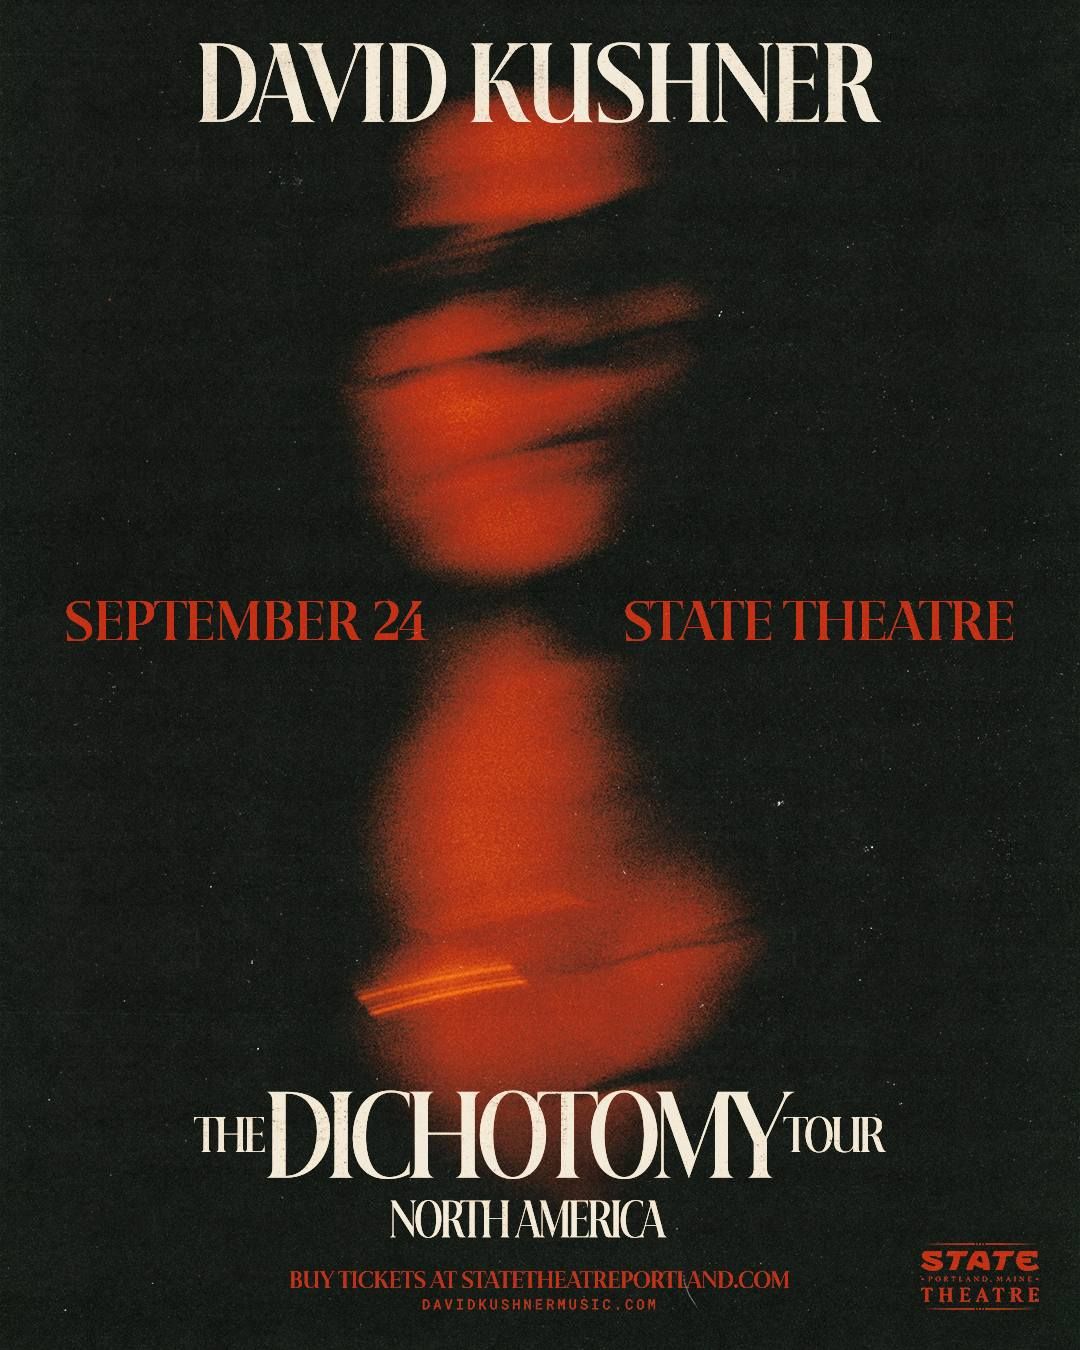 David Kushner - The Dichotomy Tour